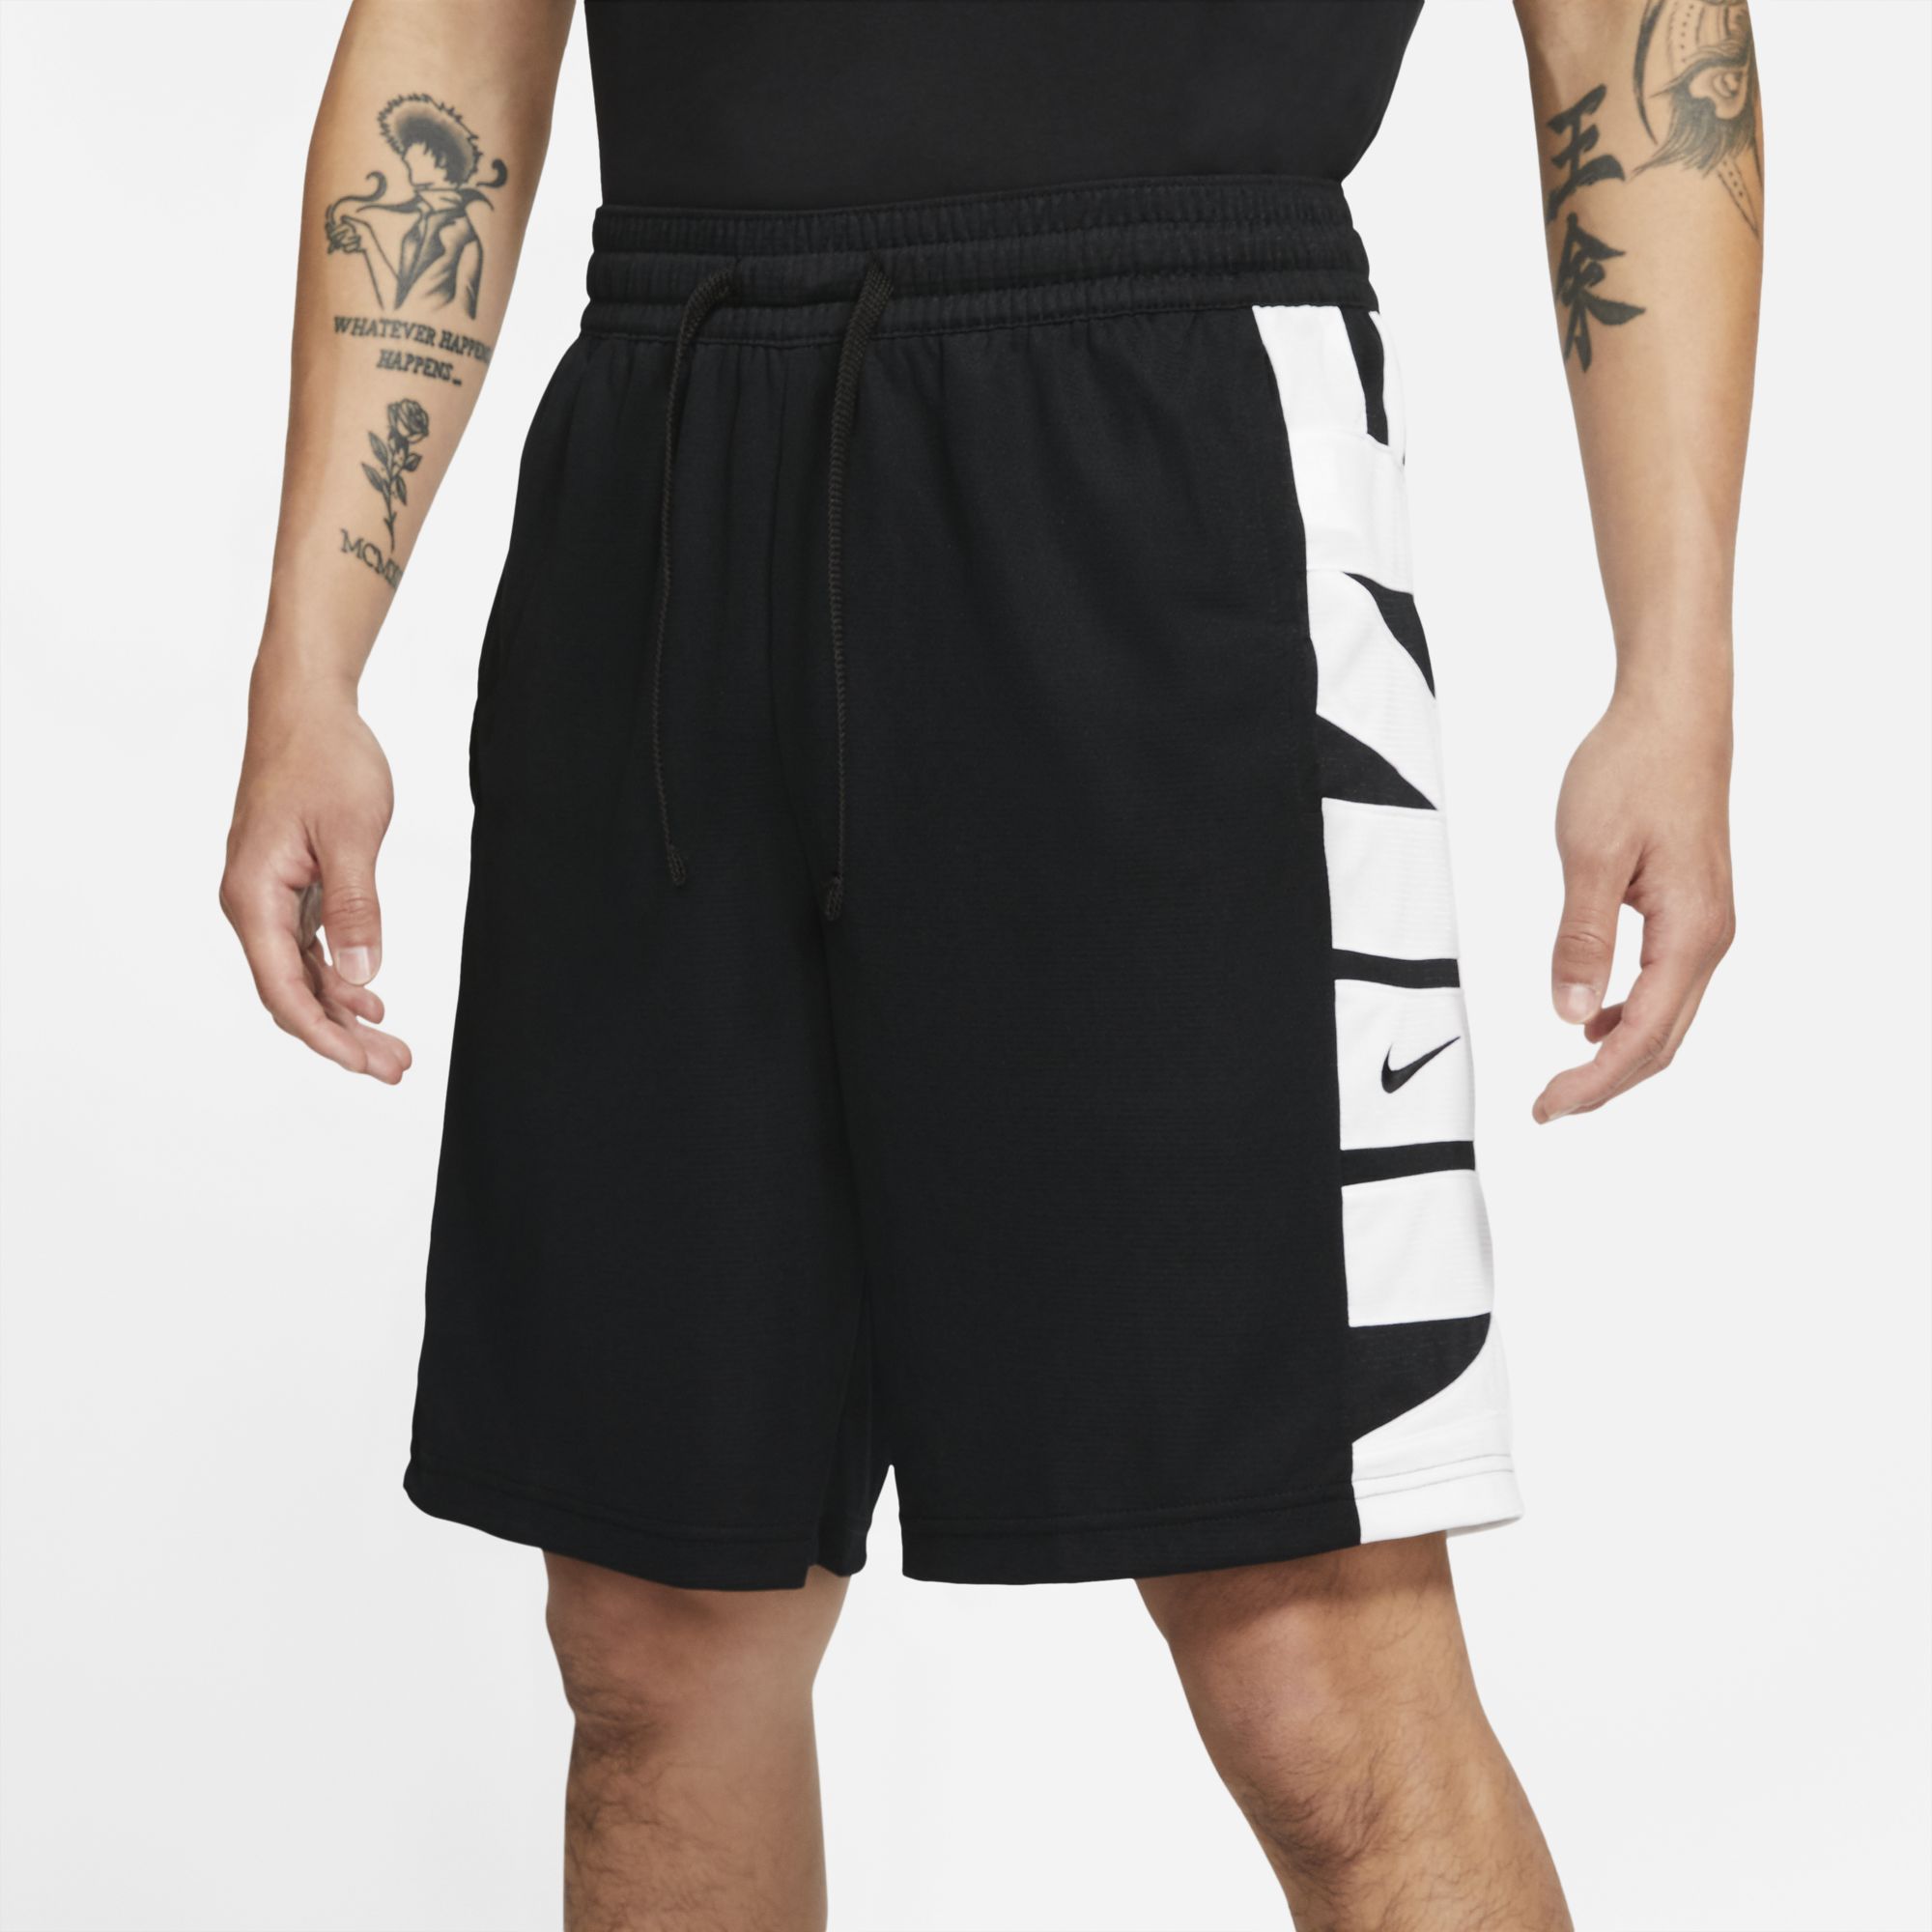 Баскетбольные шорты Nike Dri-FIT Starting 5 - картинка